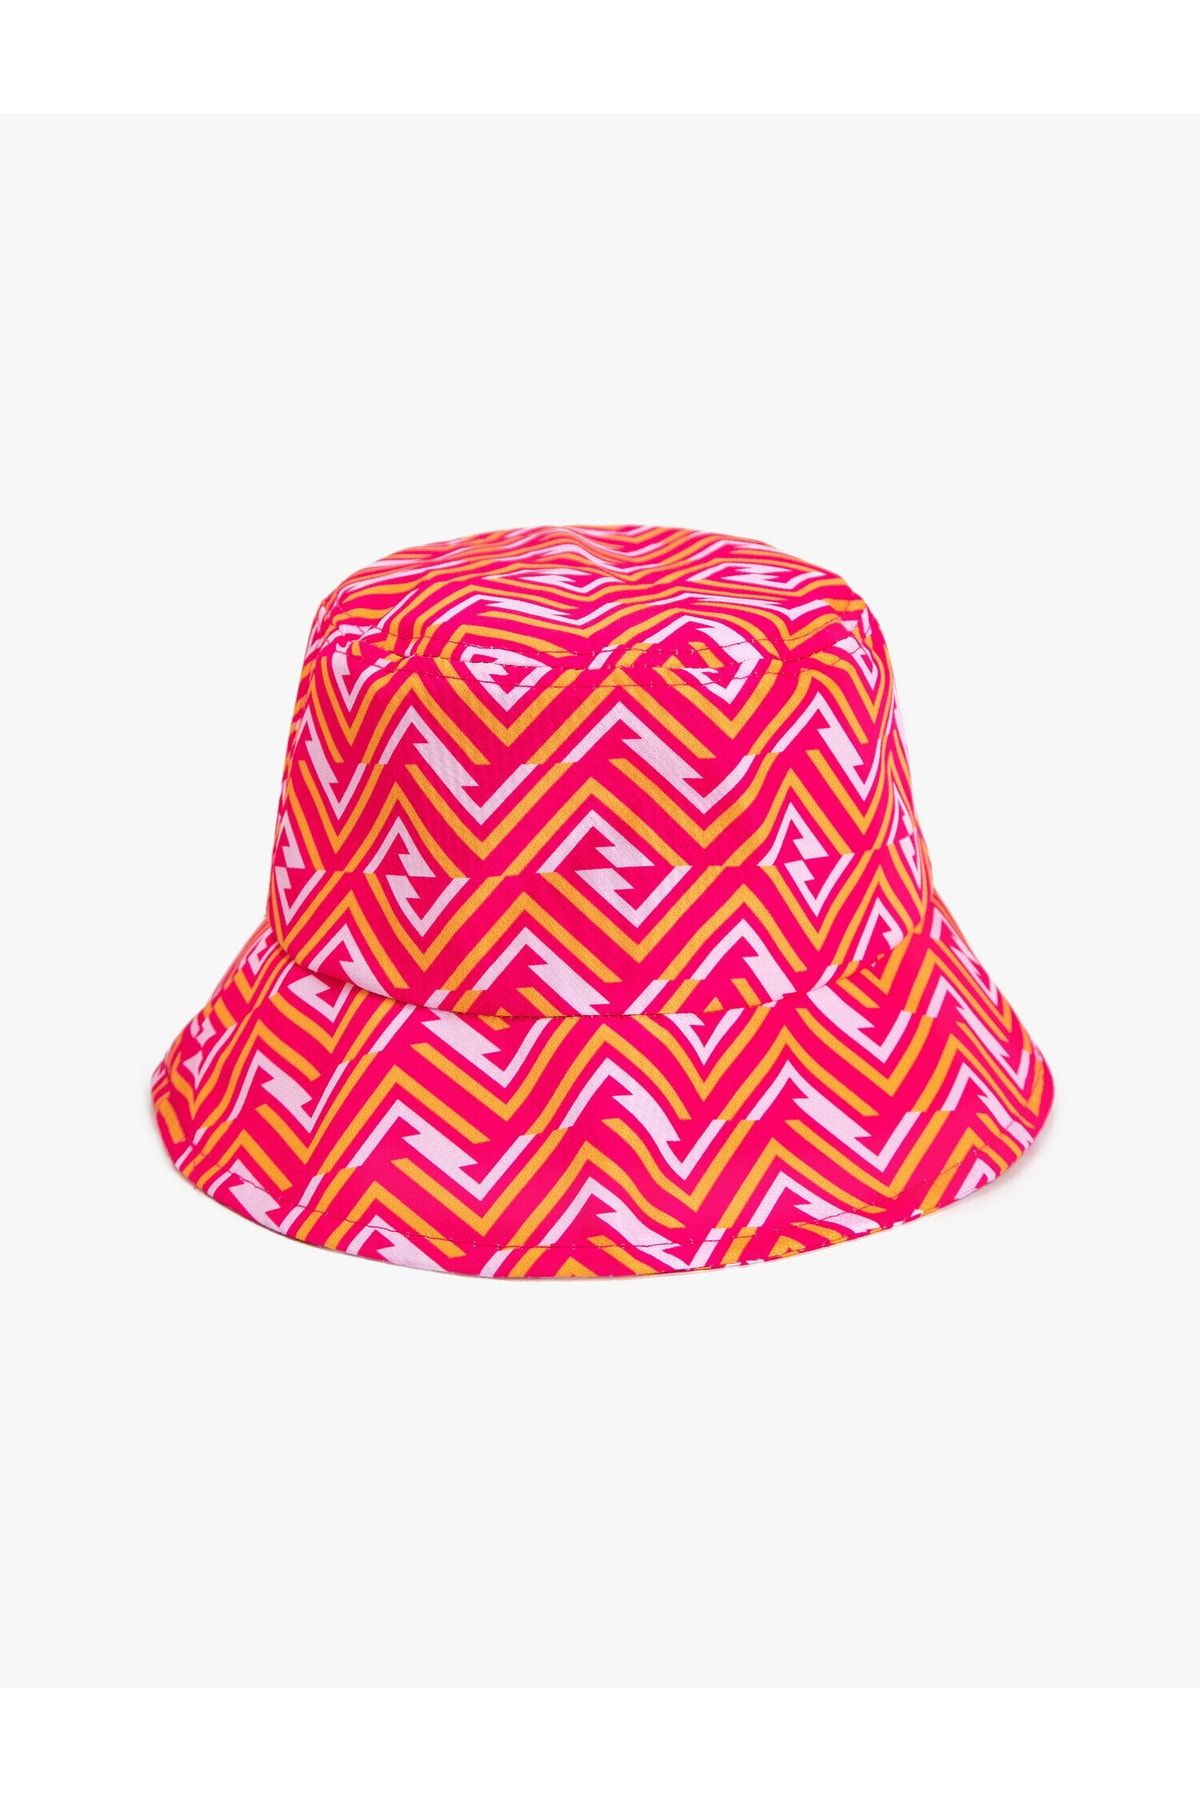 کلاه باکت زنانه طرحدار رنگی برند کوتون Koton